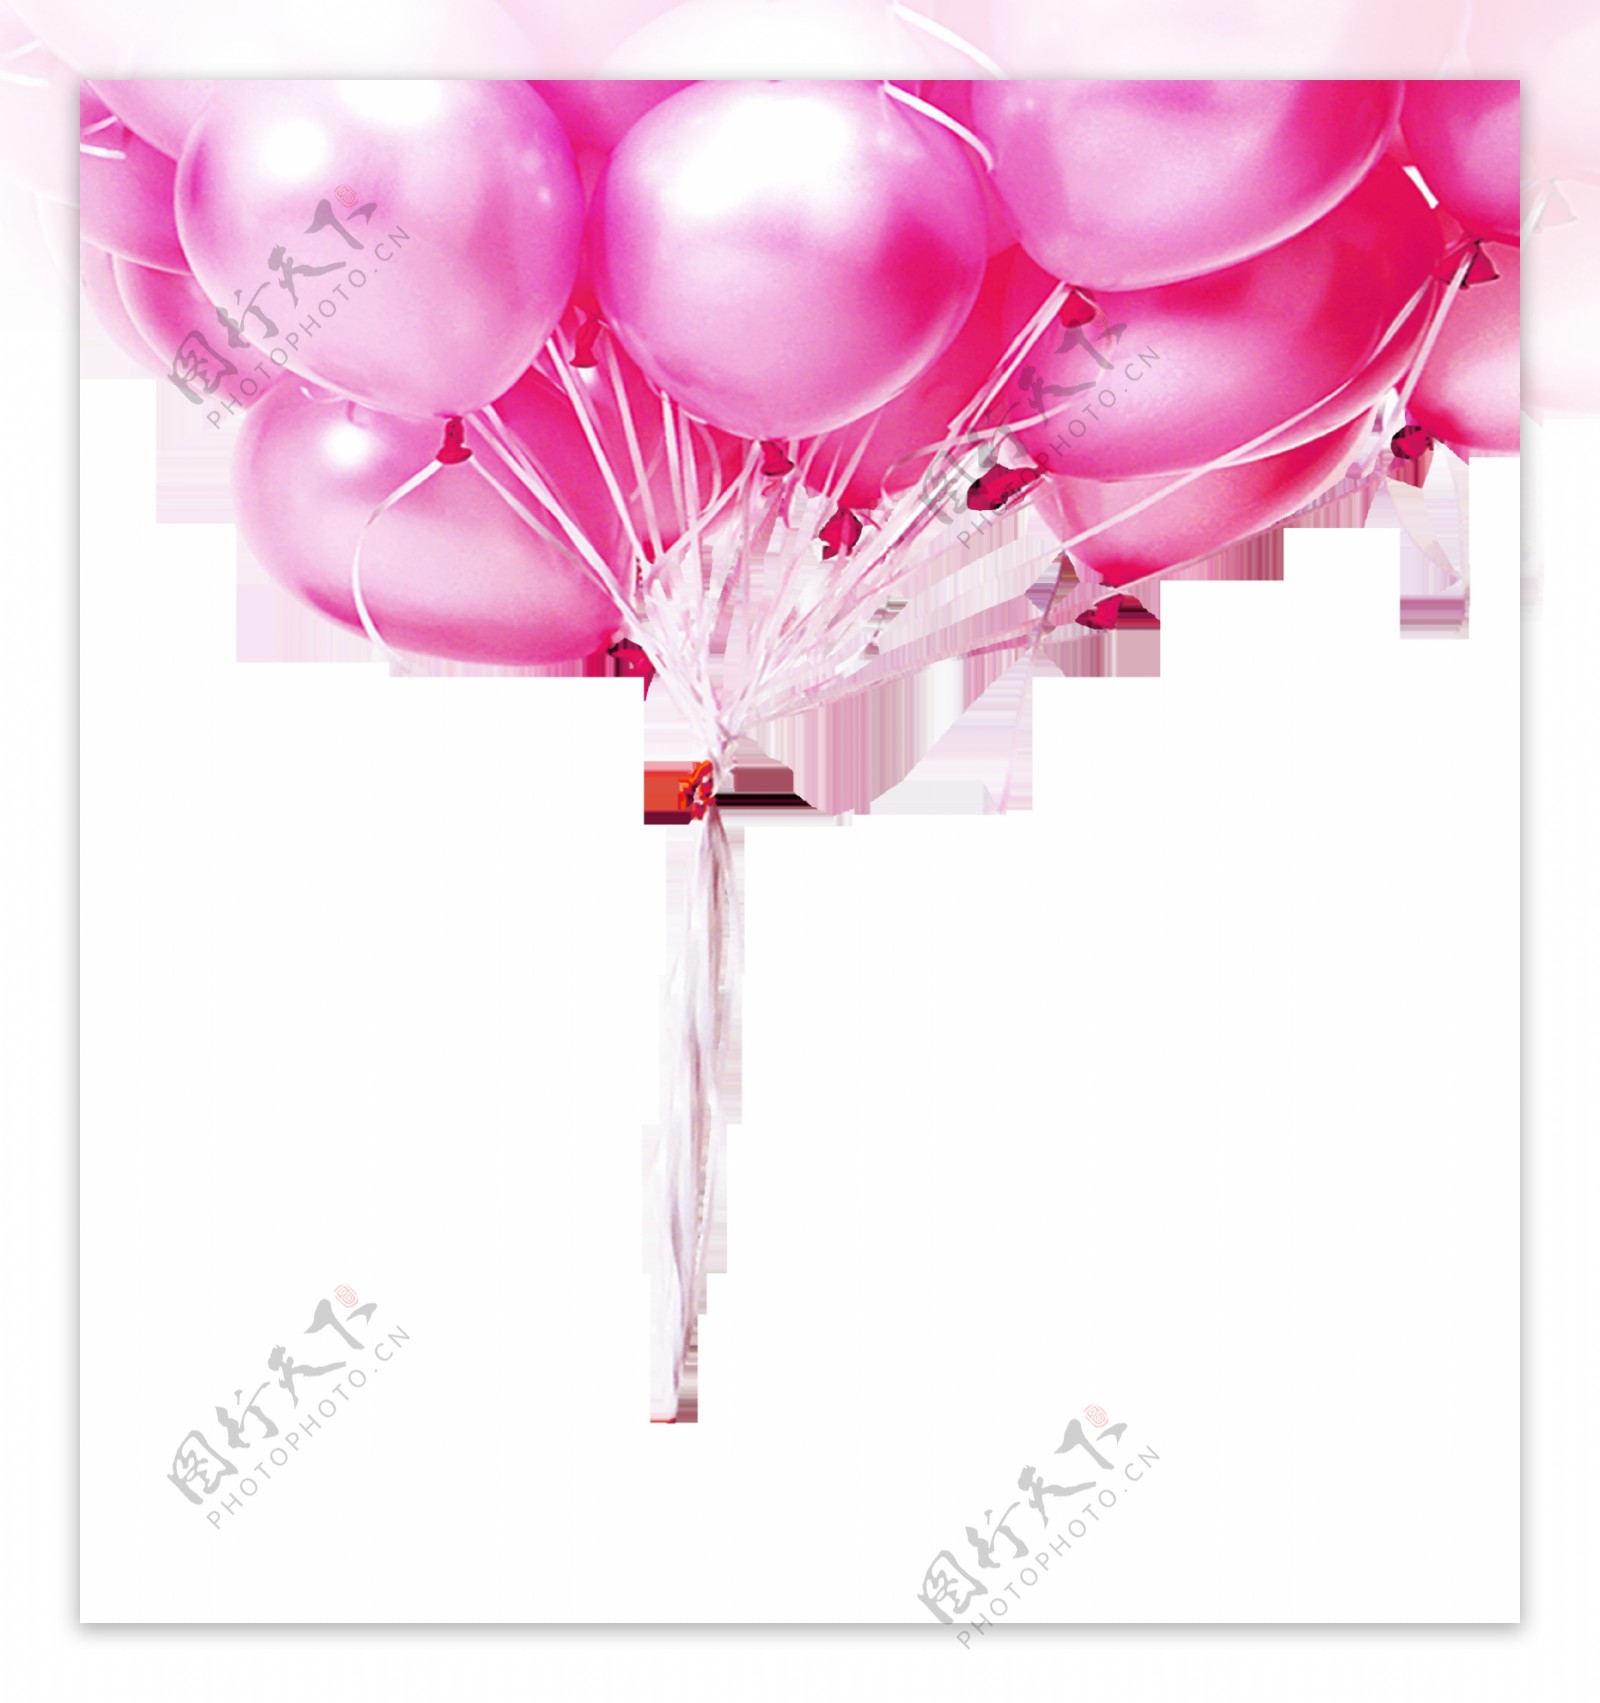 粉色气球素材